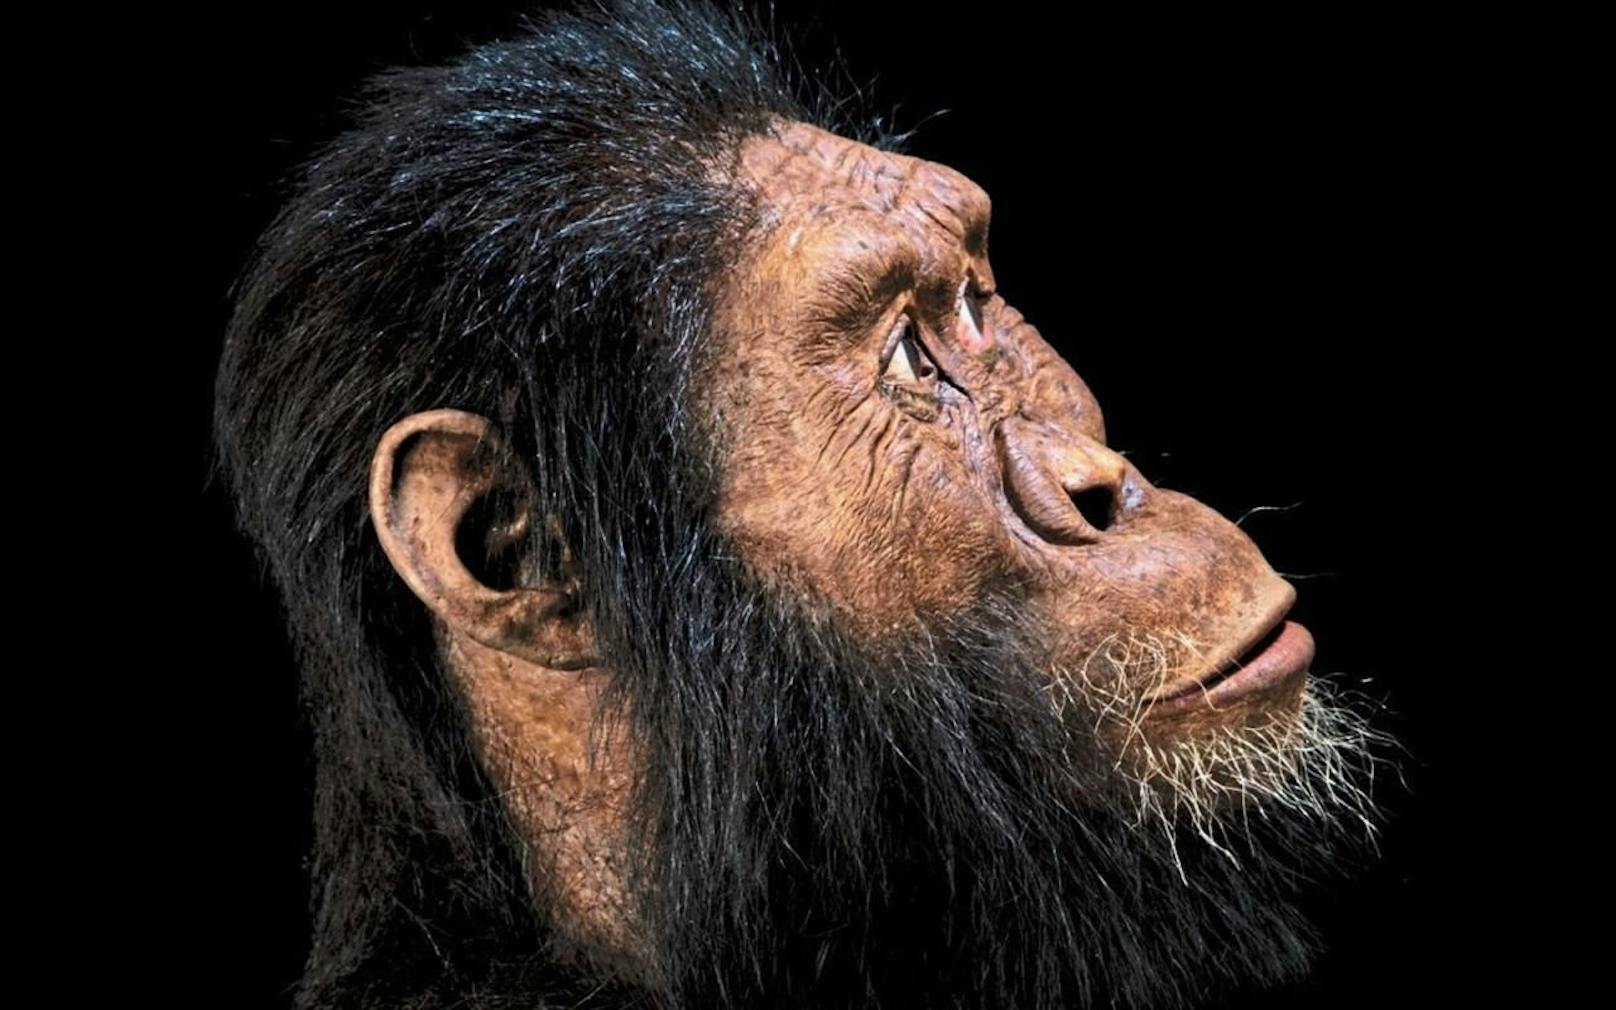 Rekonstruktion des Gesichts eines Australopithecus anamensis